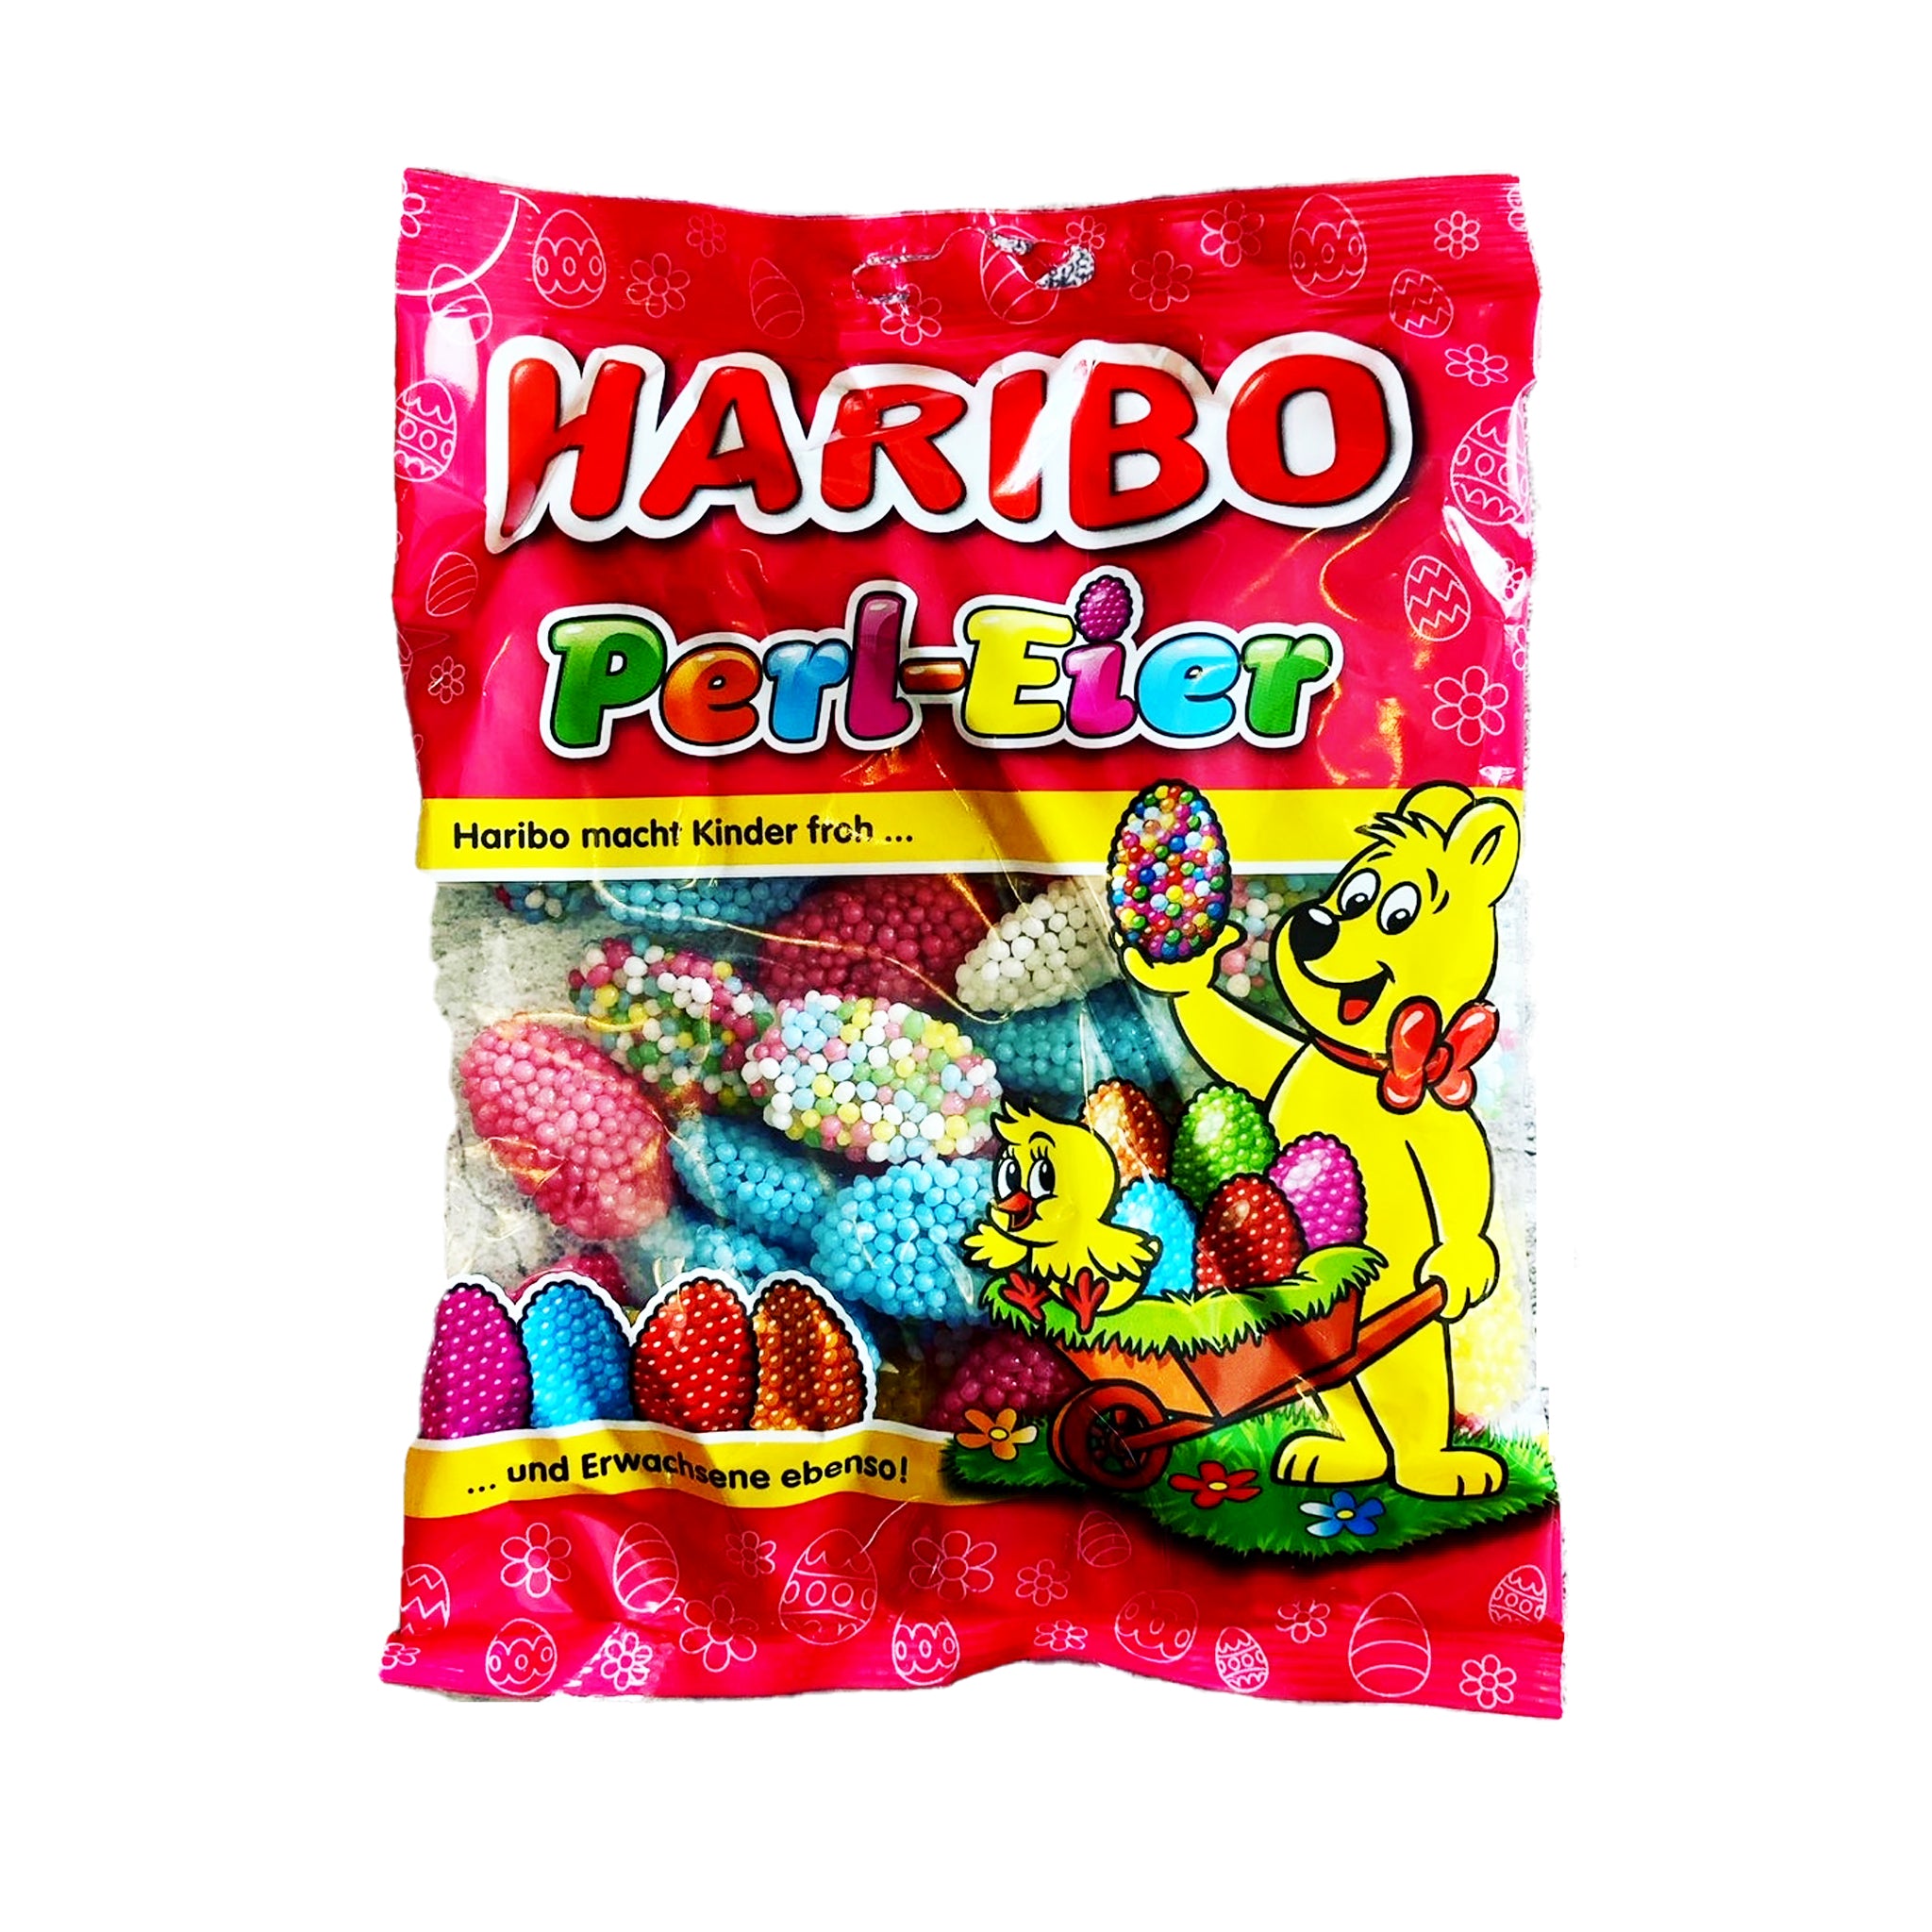 Haribo Perl Eier הריבו גלי סוכריות צבעוניות טעימים